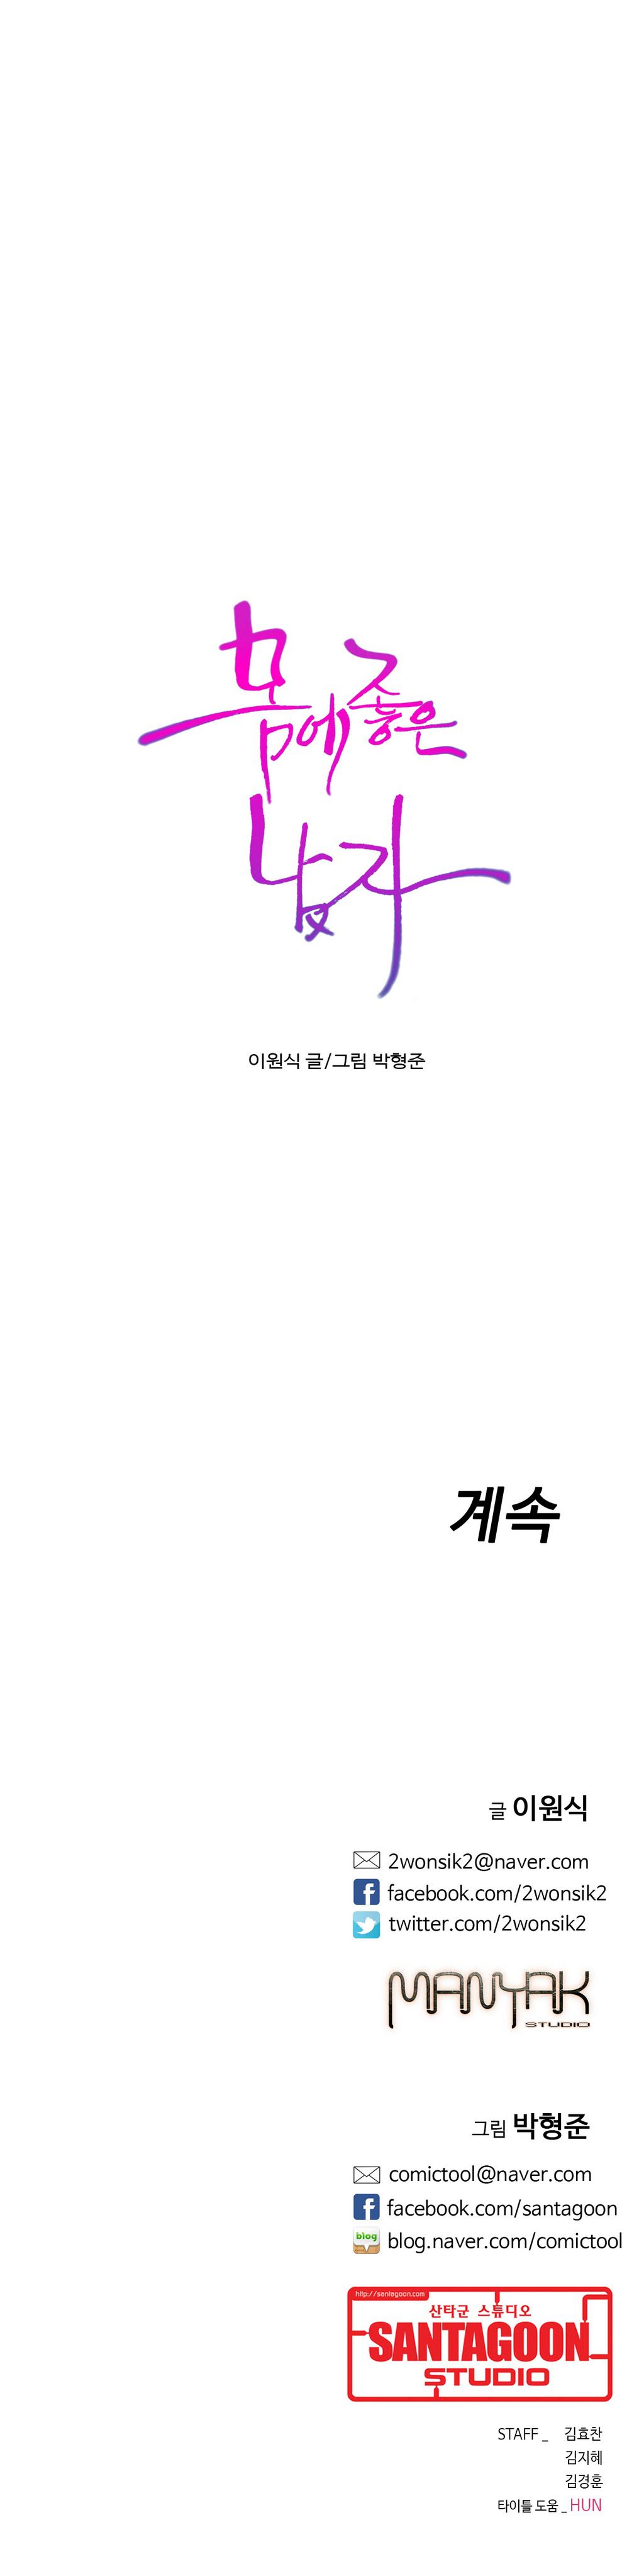 Sweet Guy Chapter 18 [Korean] (Full Color) Lezhin Comics 2wonsik2 20